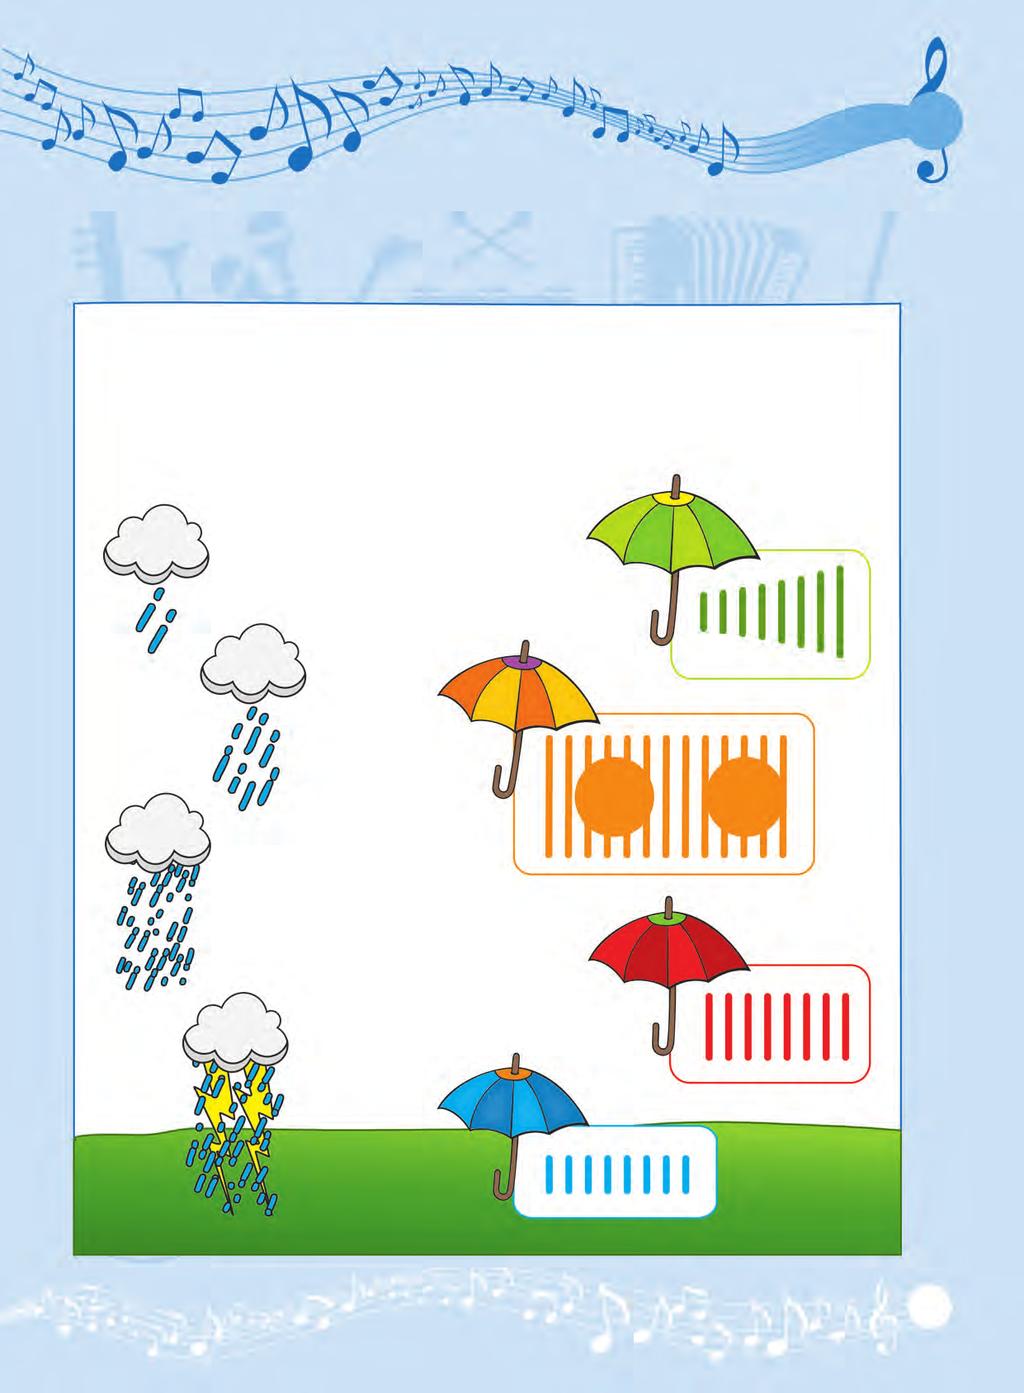 5 Βρέχει τραγούδια! Τα παιχνίδια της βροχής Δες πόσα είδη βροχής υπάρχουν!